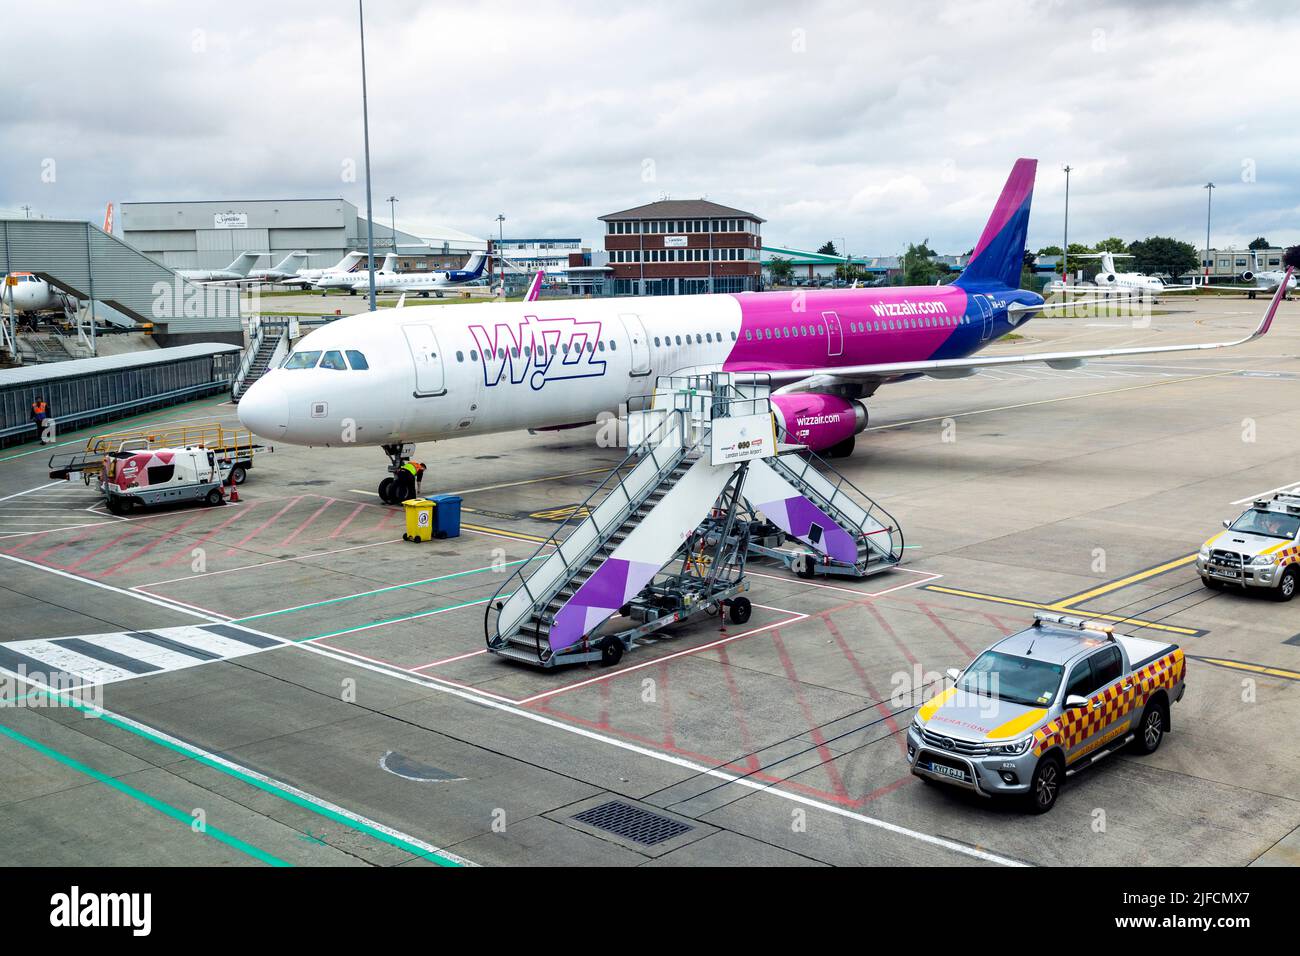 Wizz Air sur le tarmac à l'aéroport de Luton, Luton, Londres, Royaume-Uni Banque D'Images